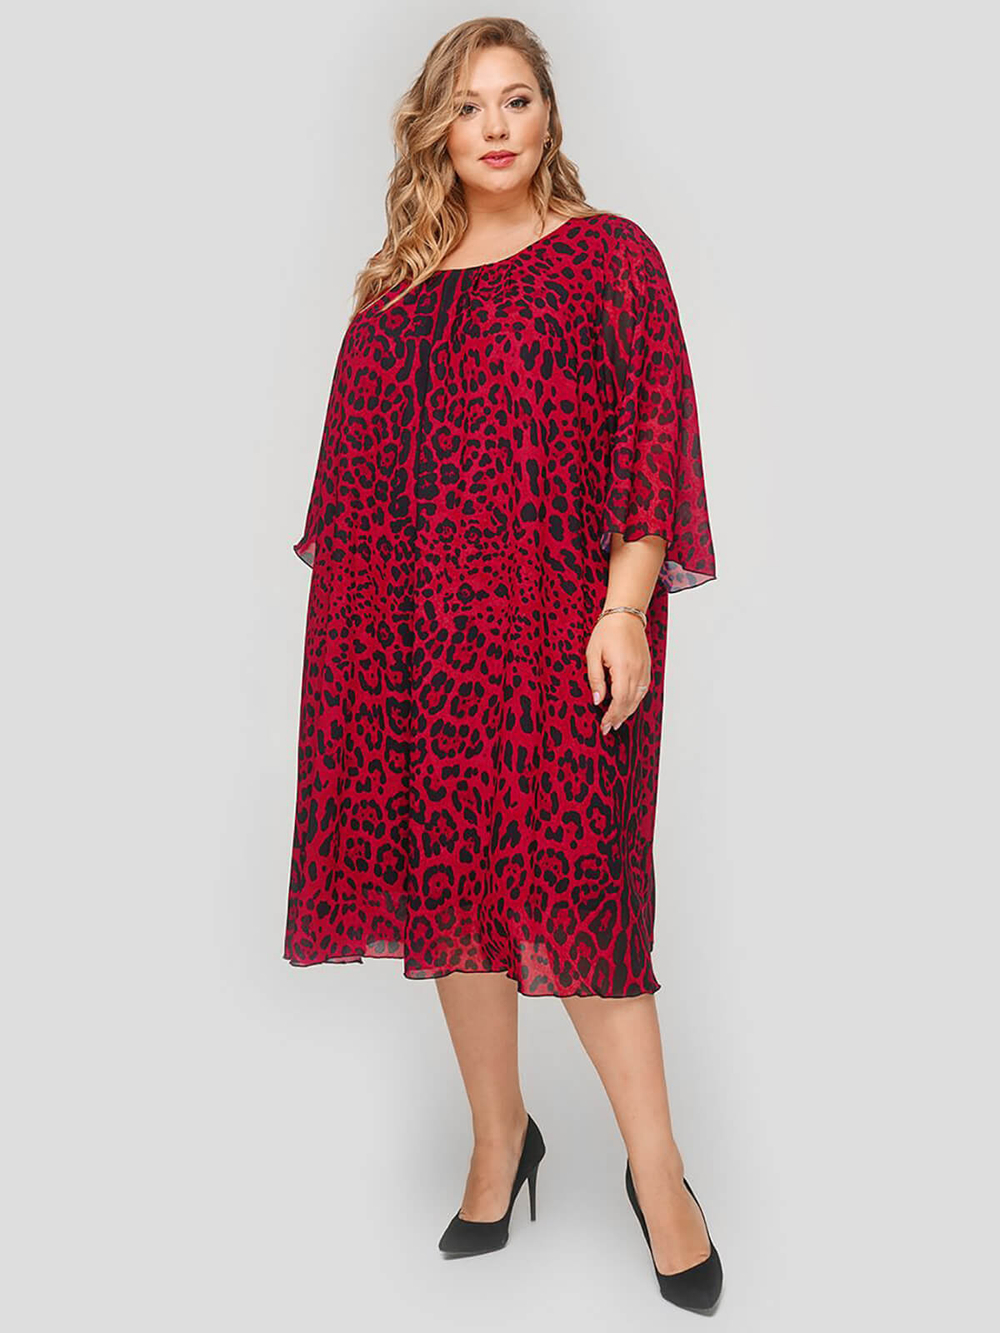 Платье шифоновое Красный леопард